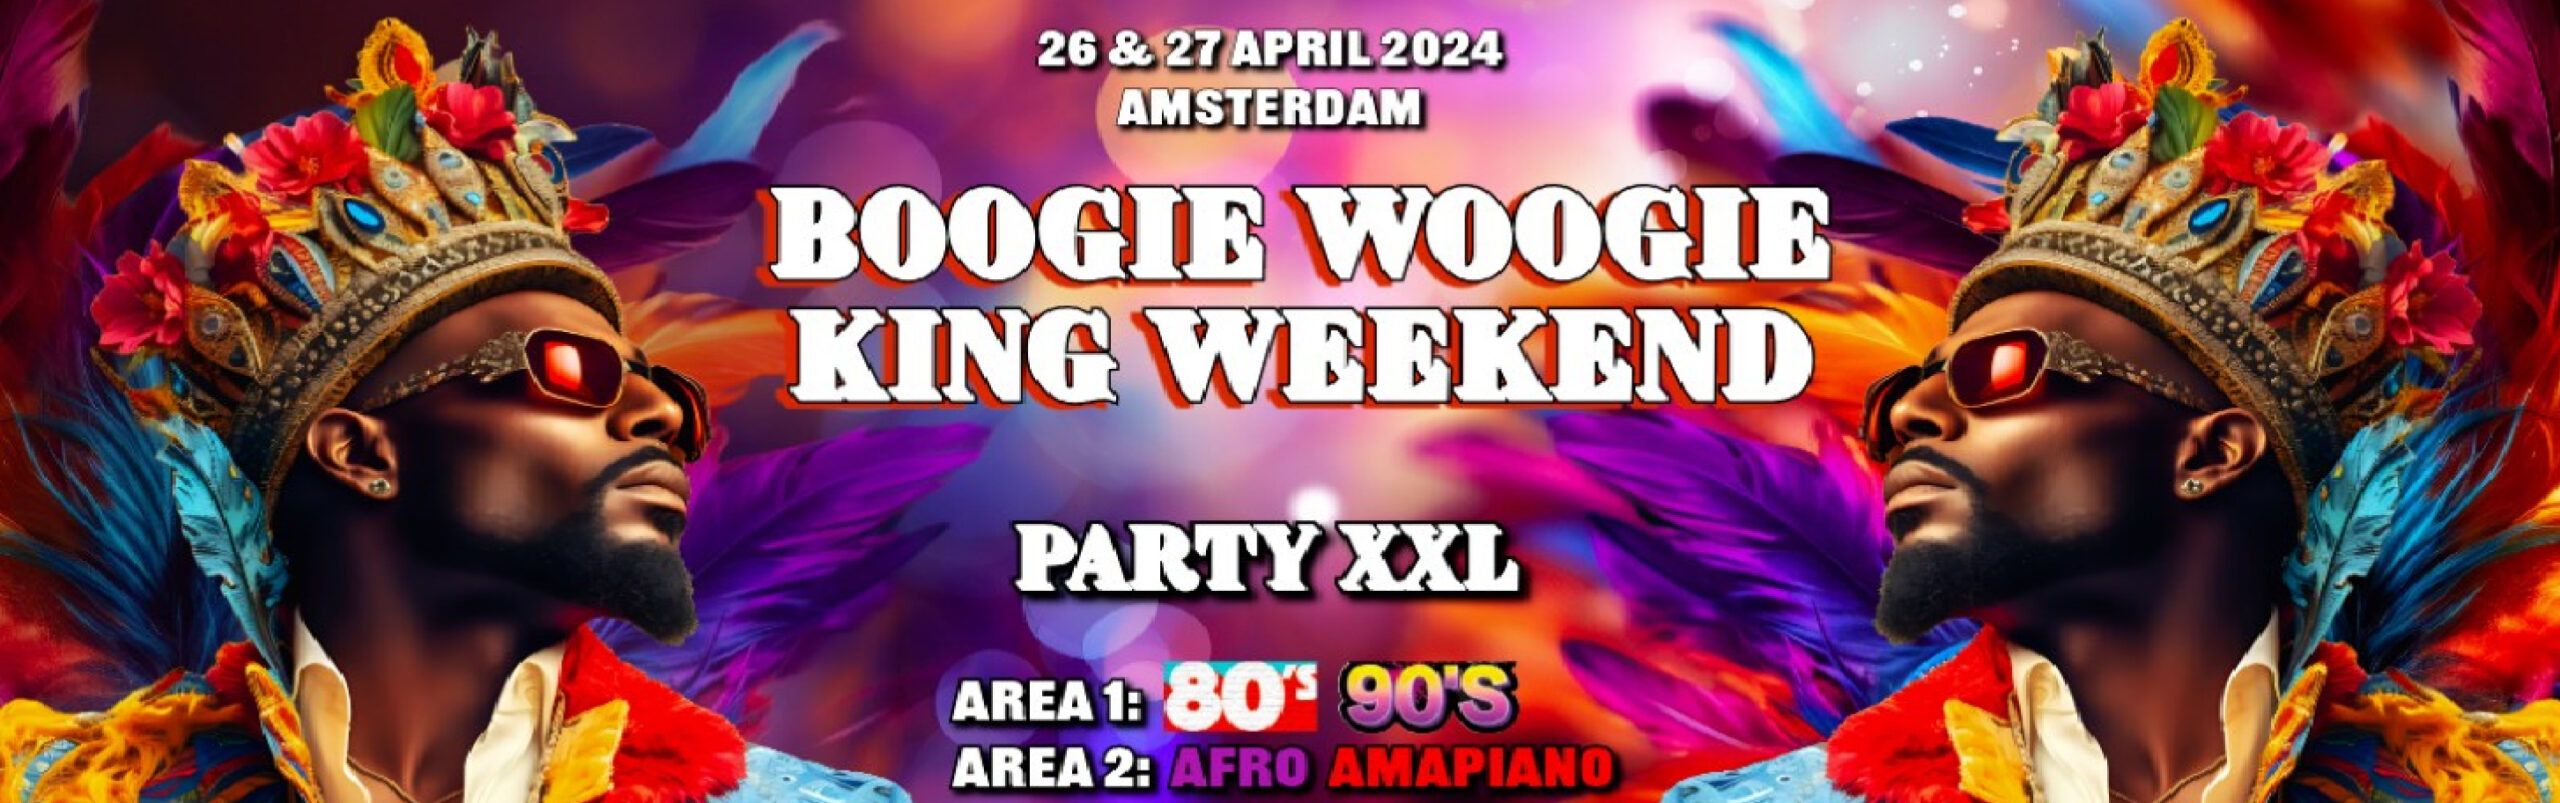 Boogie Woogie King Weekend header